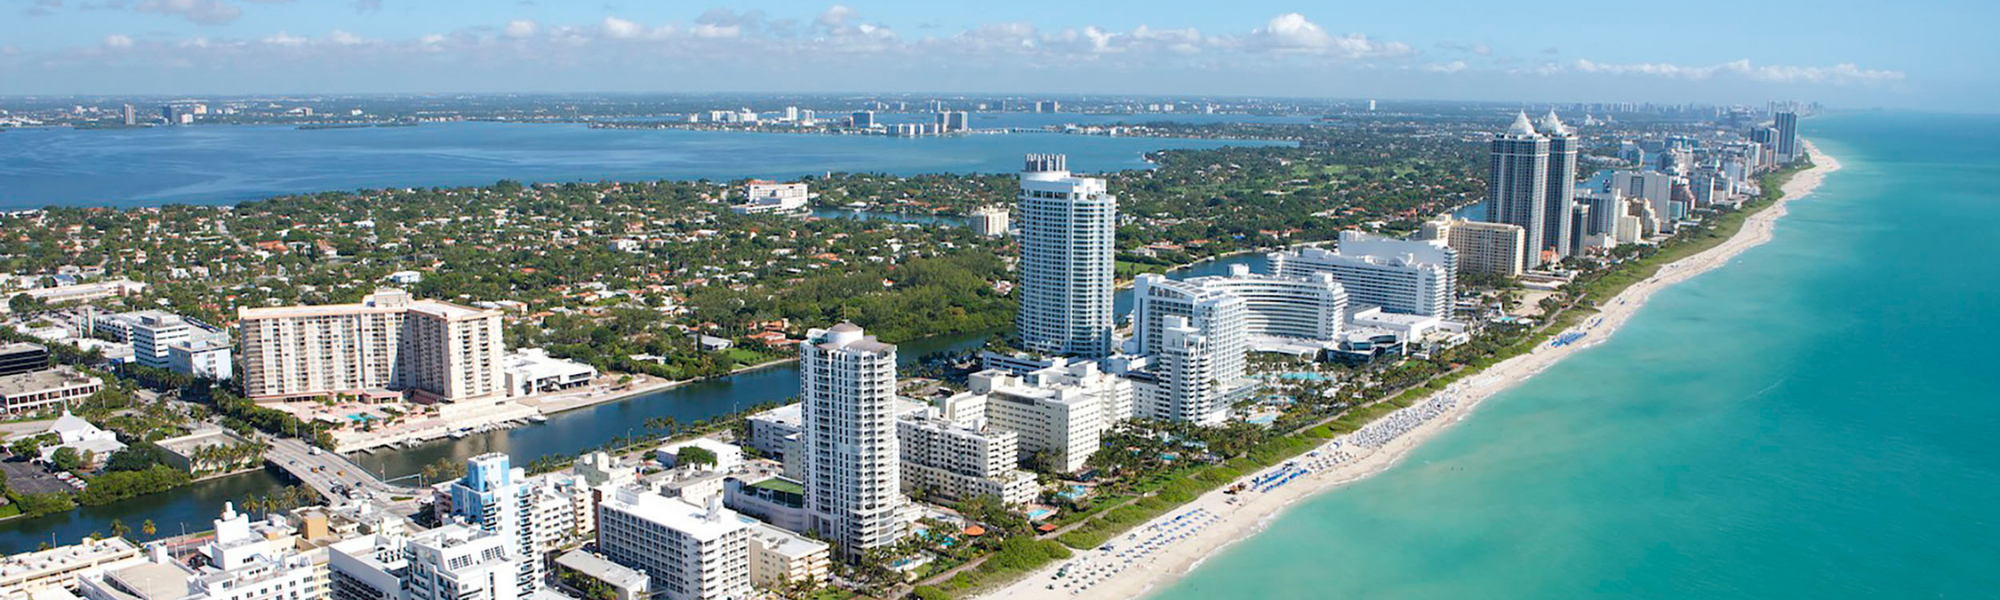 Cityscape of Miami